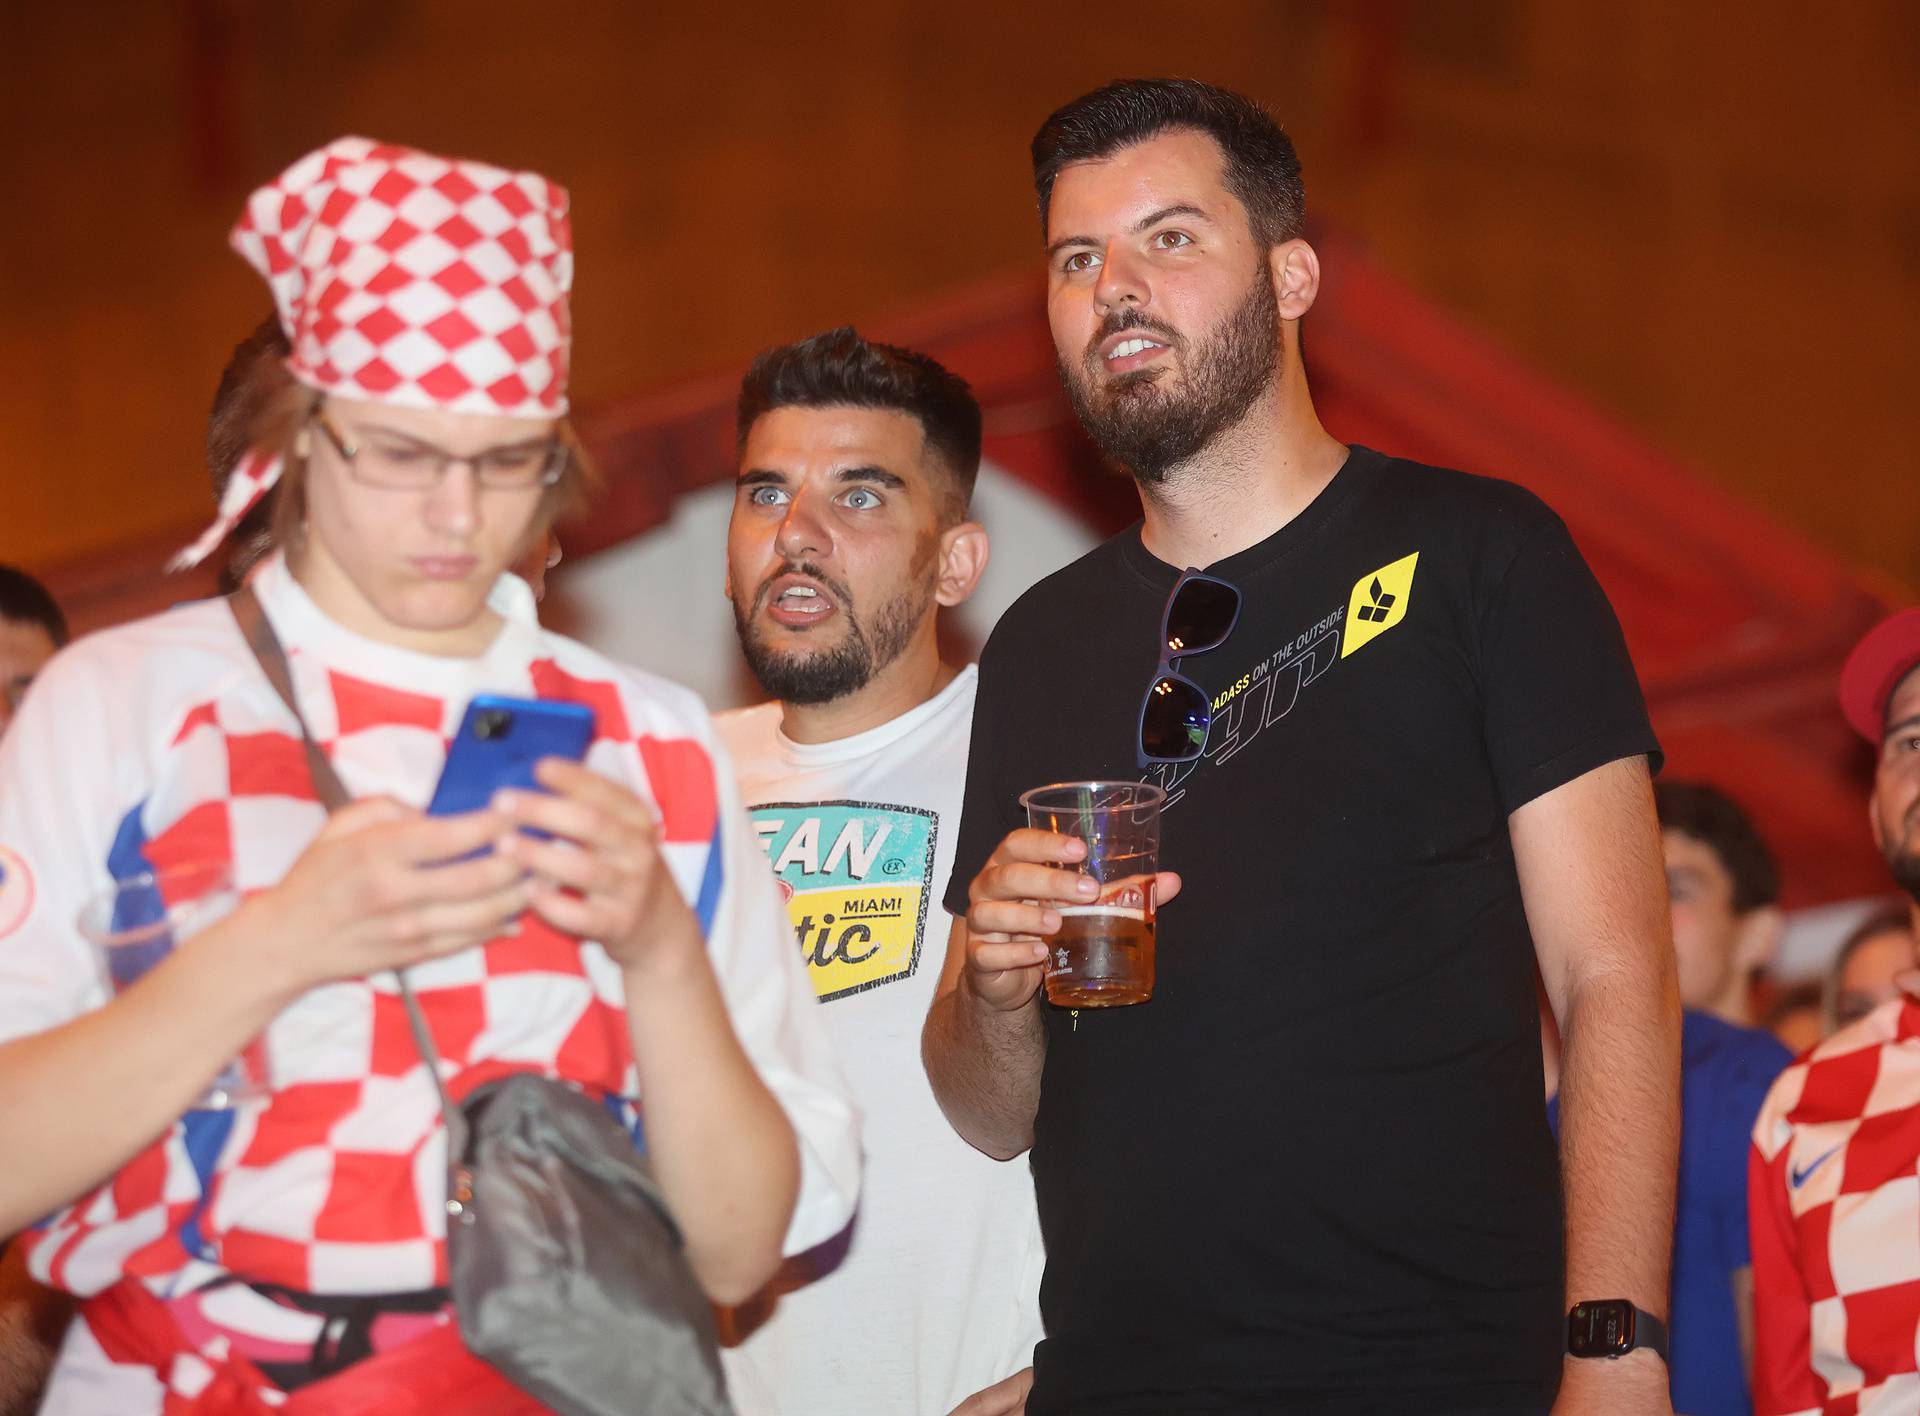 Mate Rimac opustio se na Trgu, nakon pobjede Hrvatske fotkao se s razdraganim navijačima